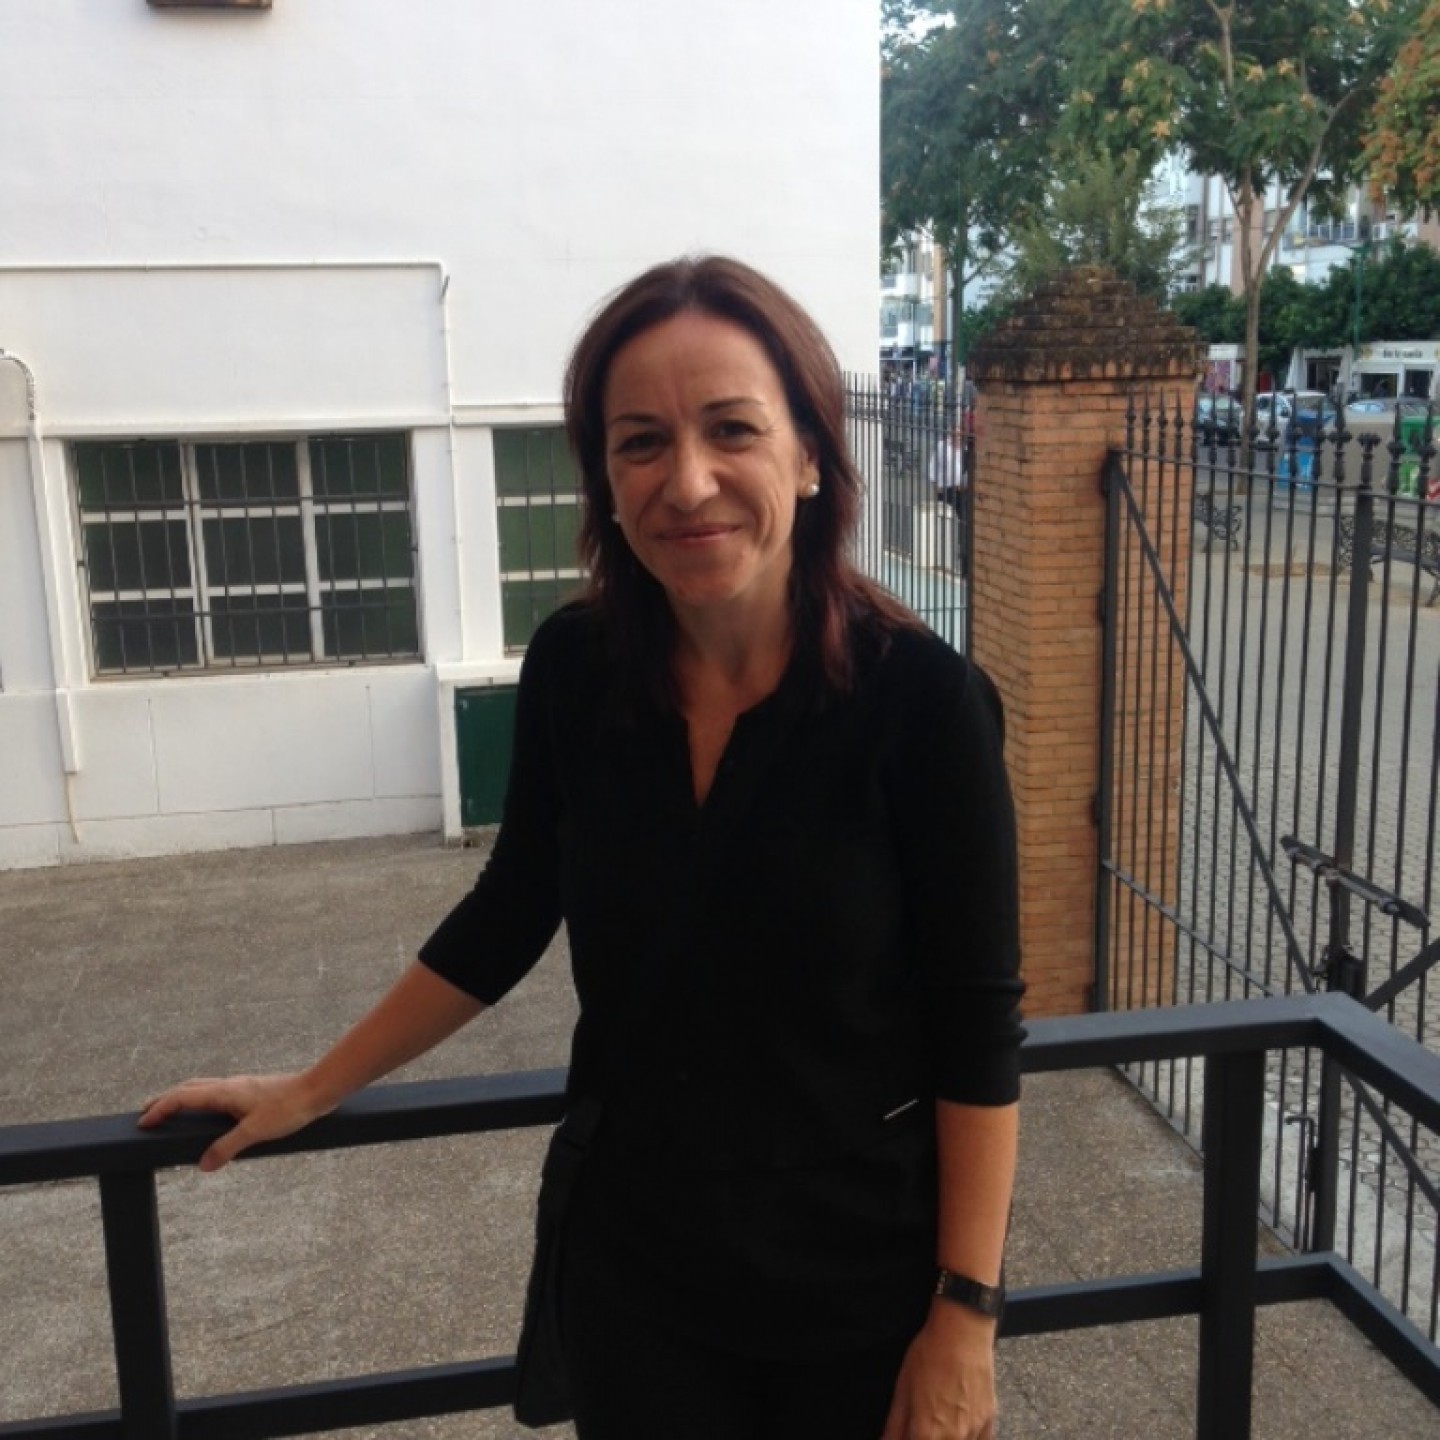 Carmen Vives, nueva presidenta de la Sociedad Española de Epidemiología